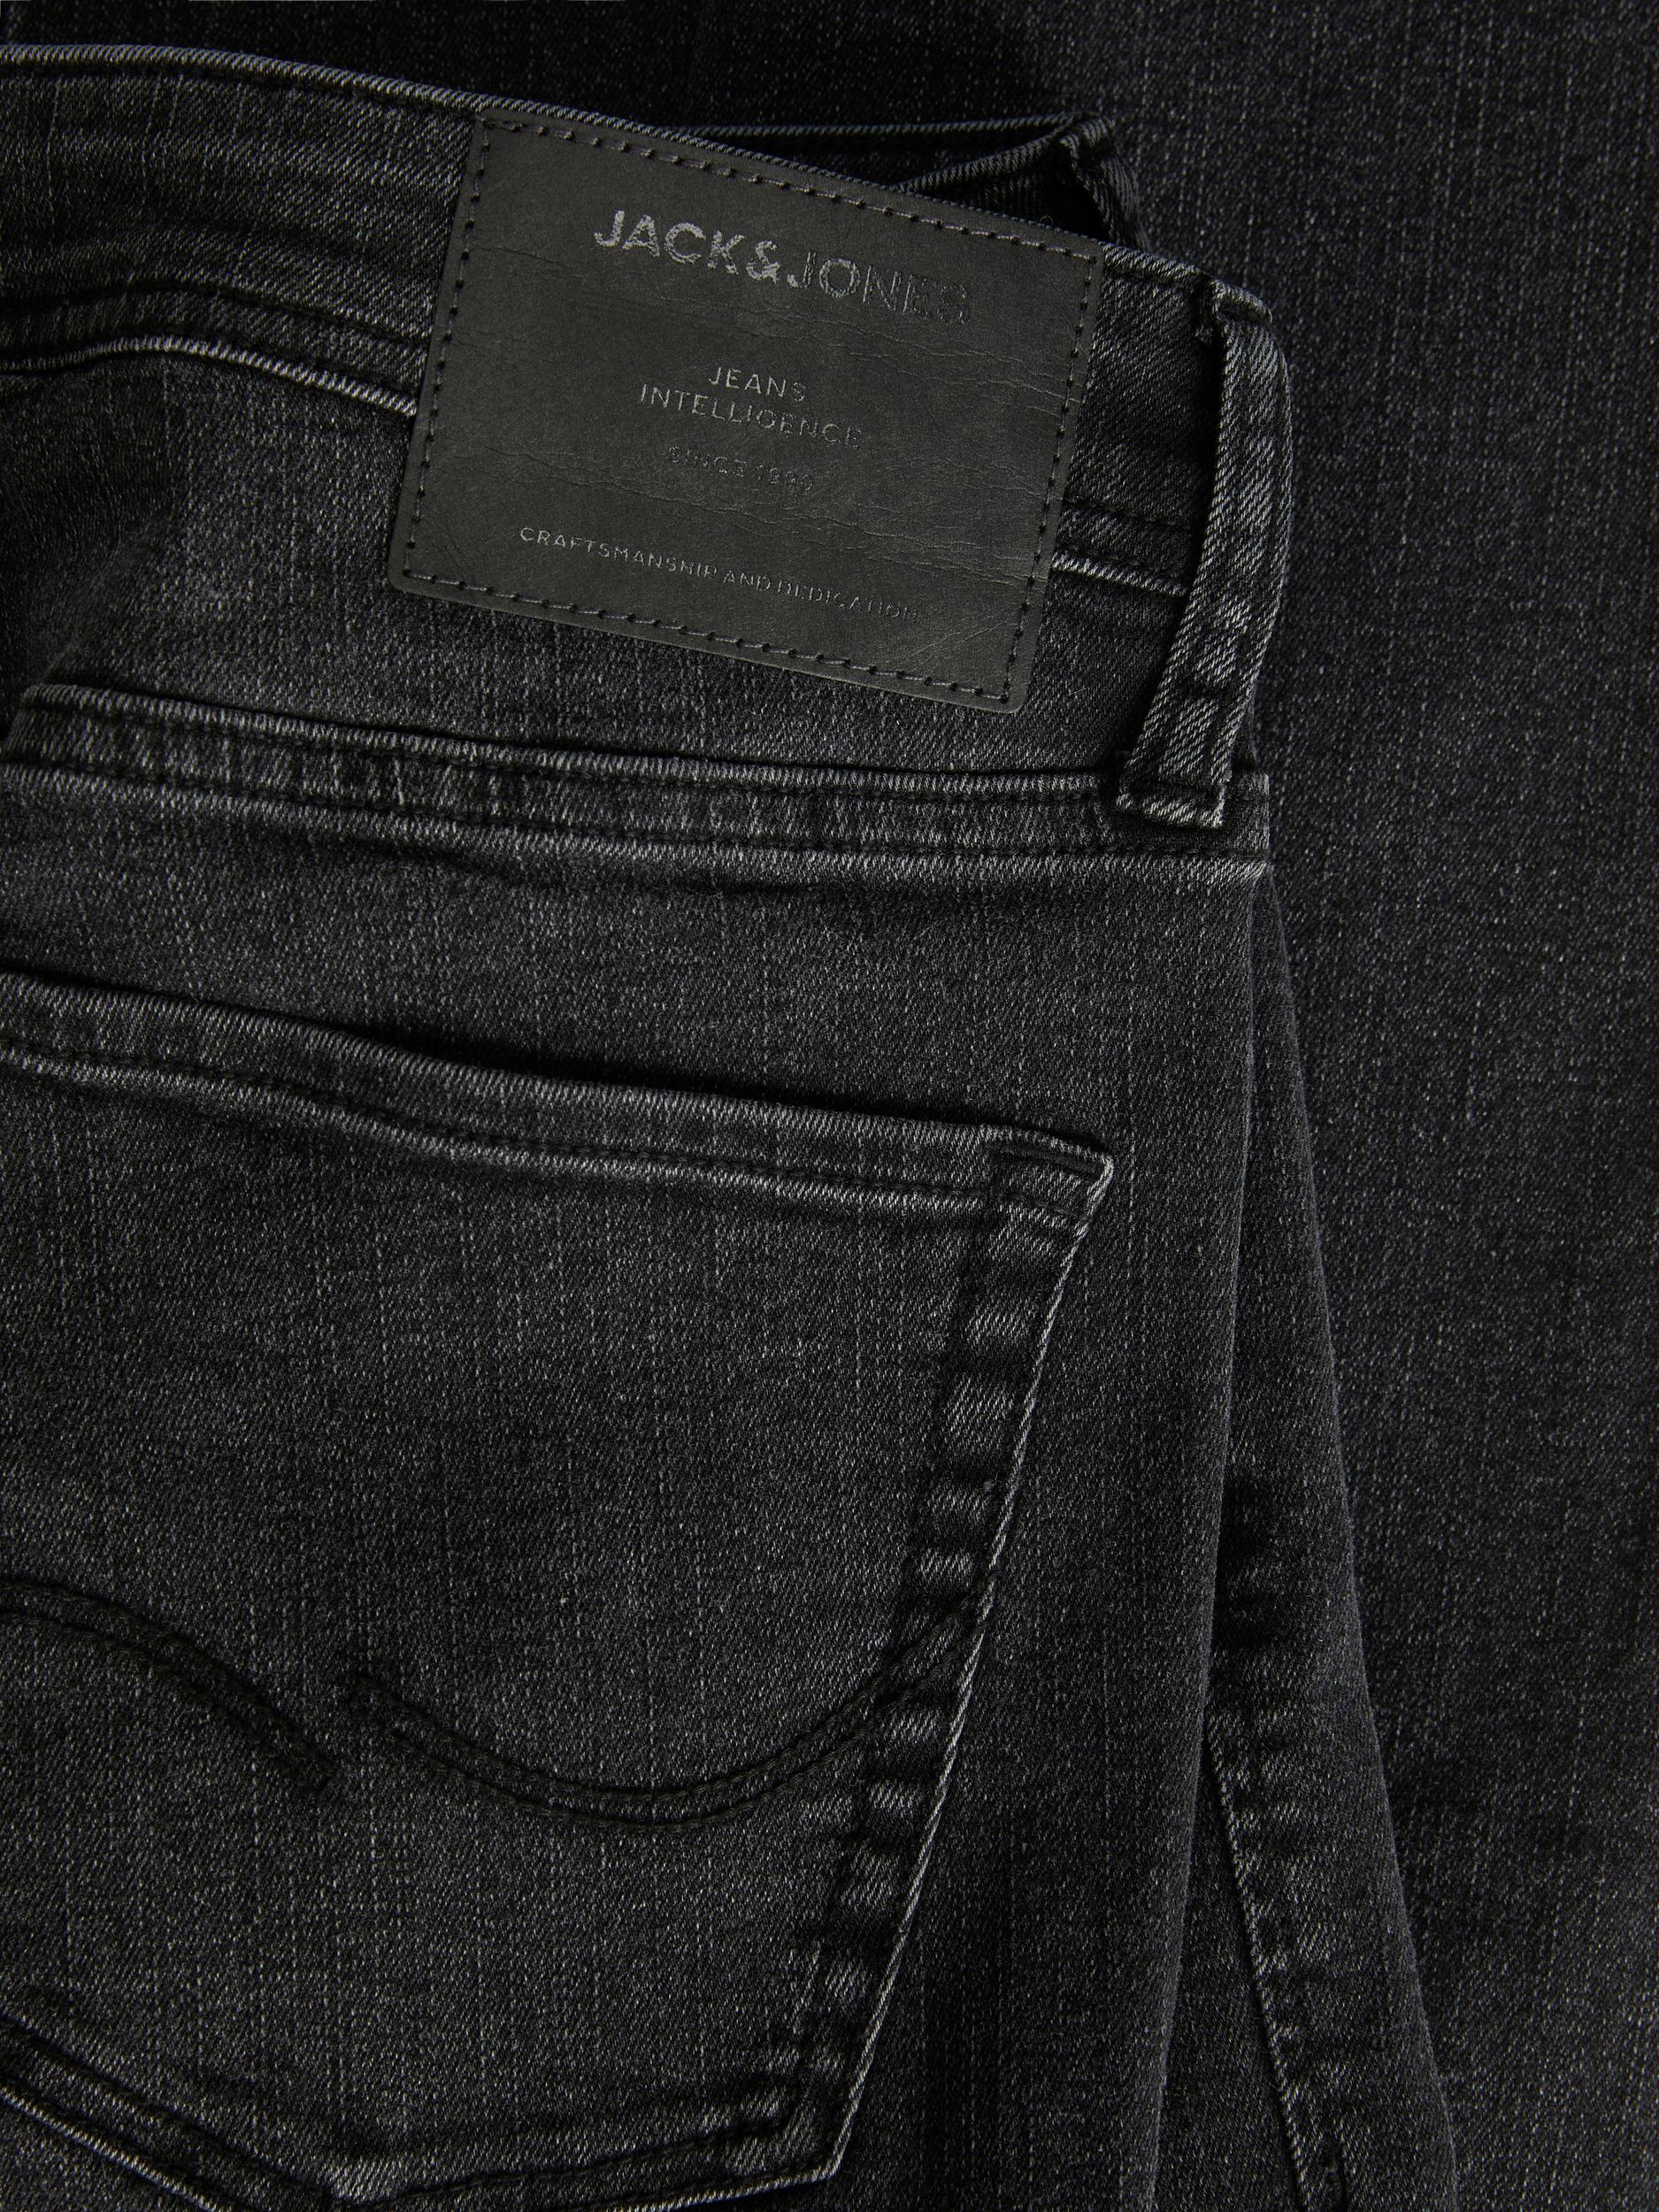 Jack & Jones Glenn Original MF 772 Slim Fit Jeans Black - Raw Menswear